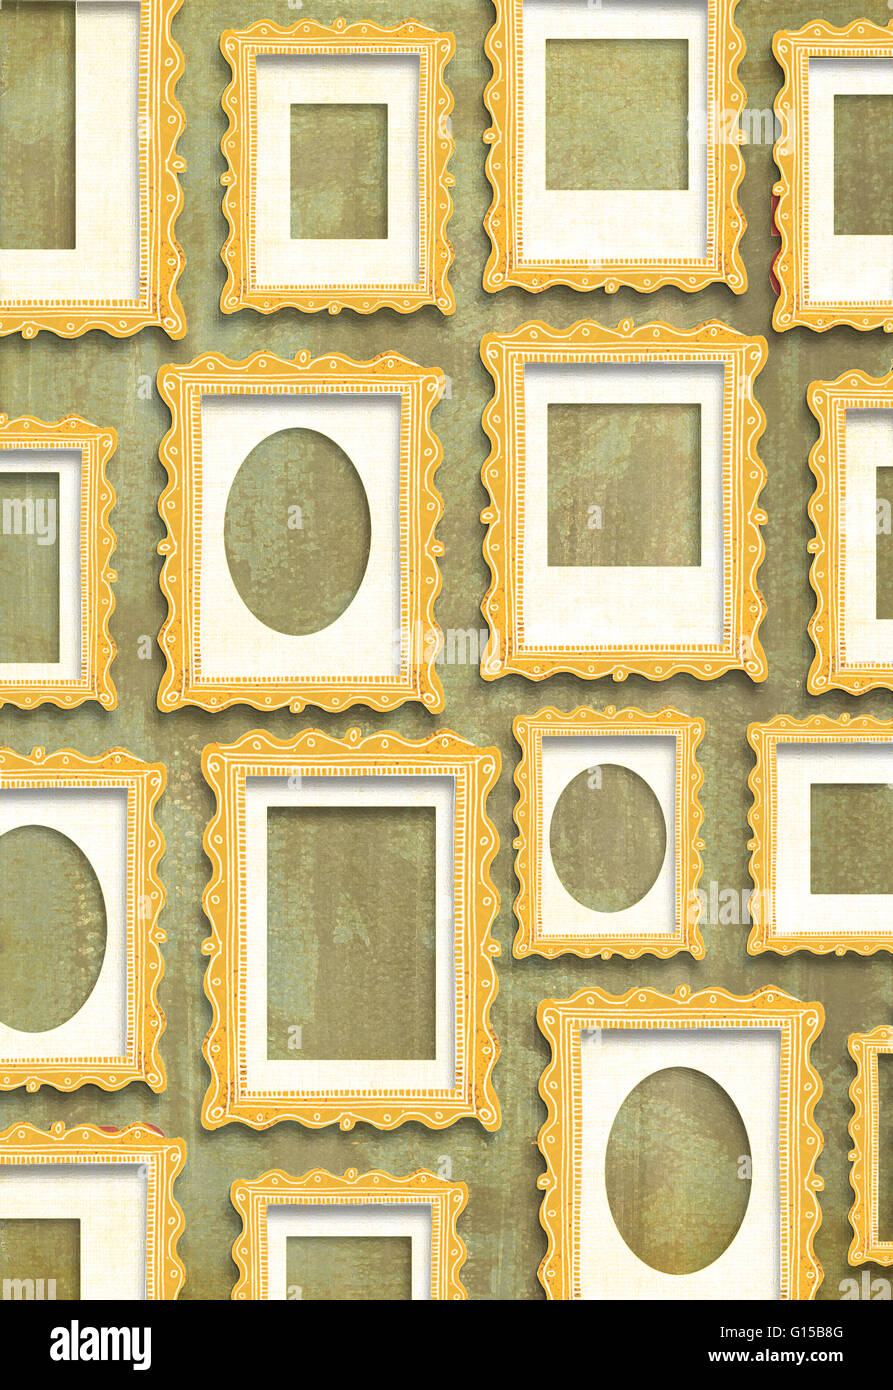 Cornici dorate in formati diversi su una carta da parati marrone Foto Stock